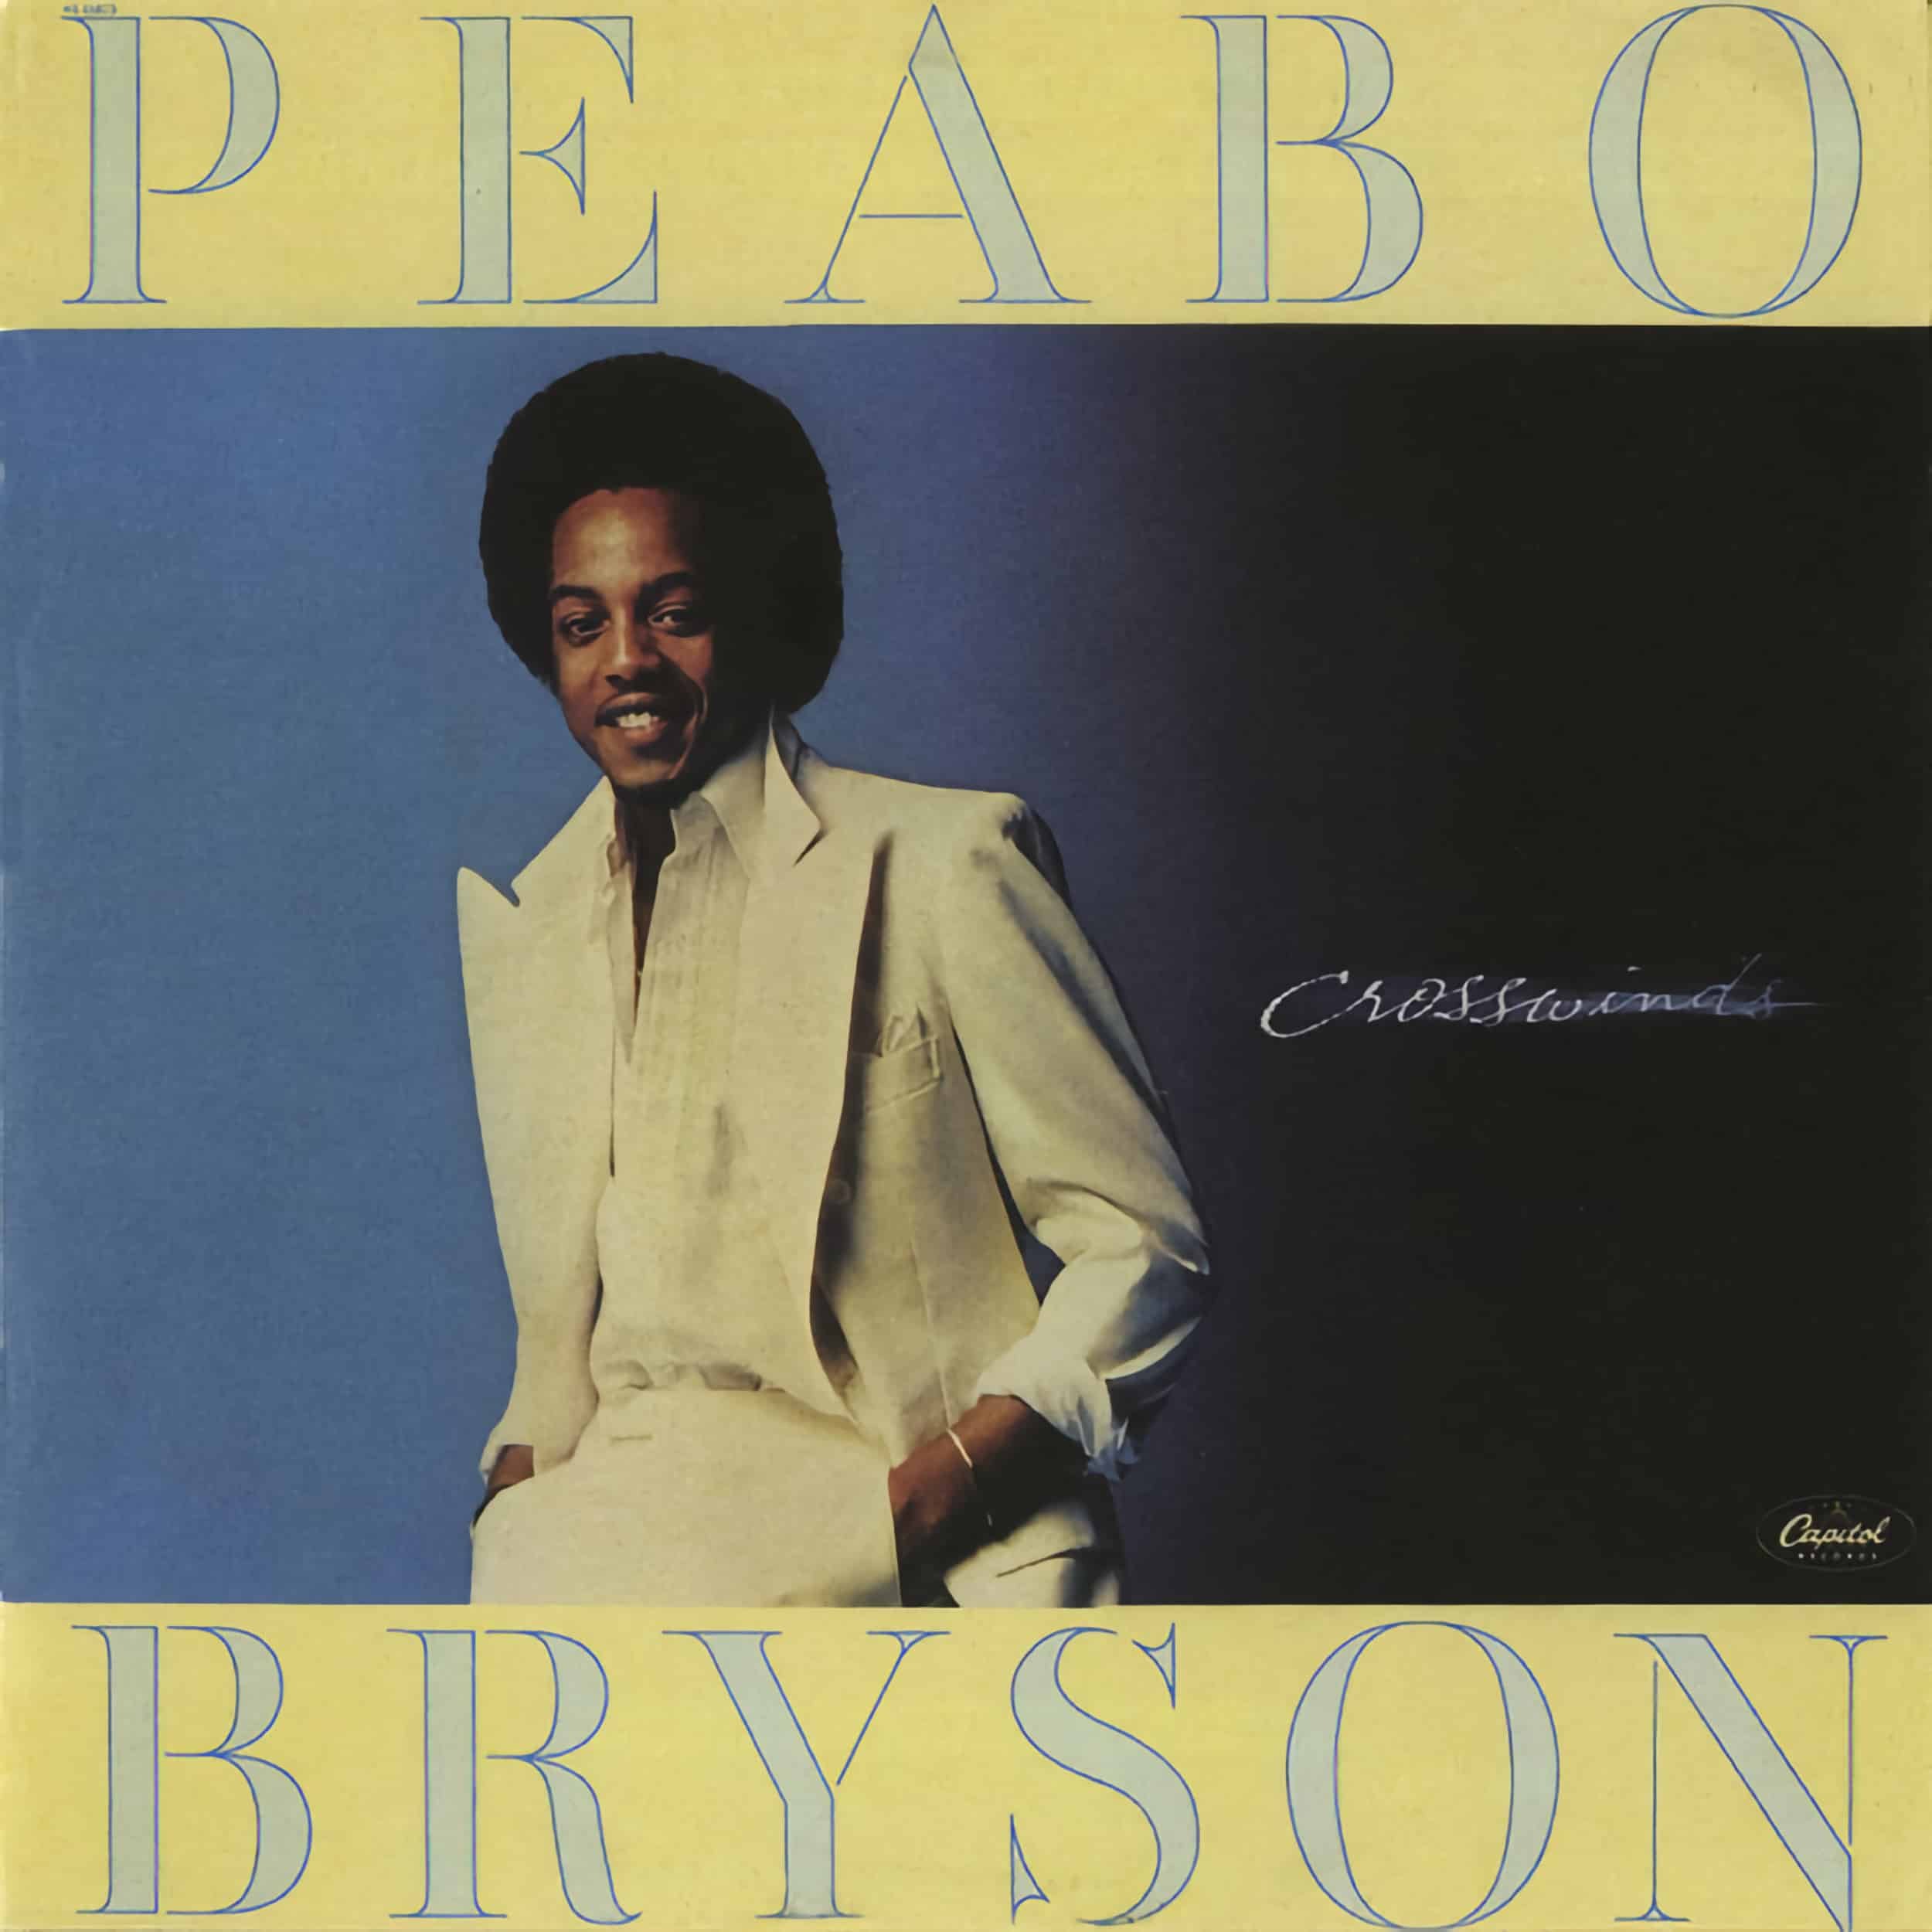 Peabo Bryson – Crosswinds